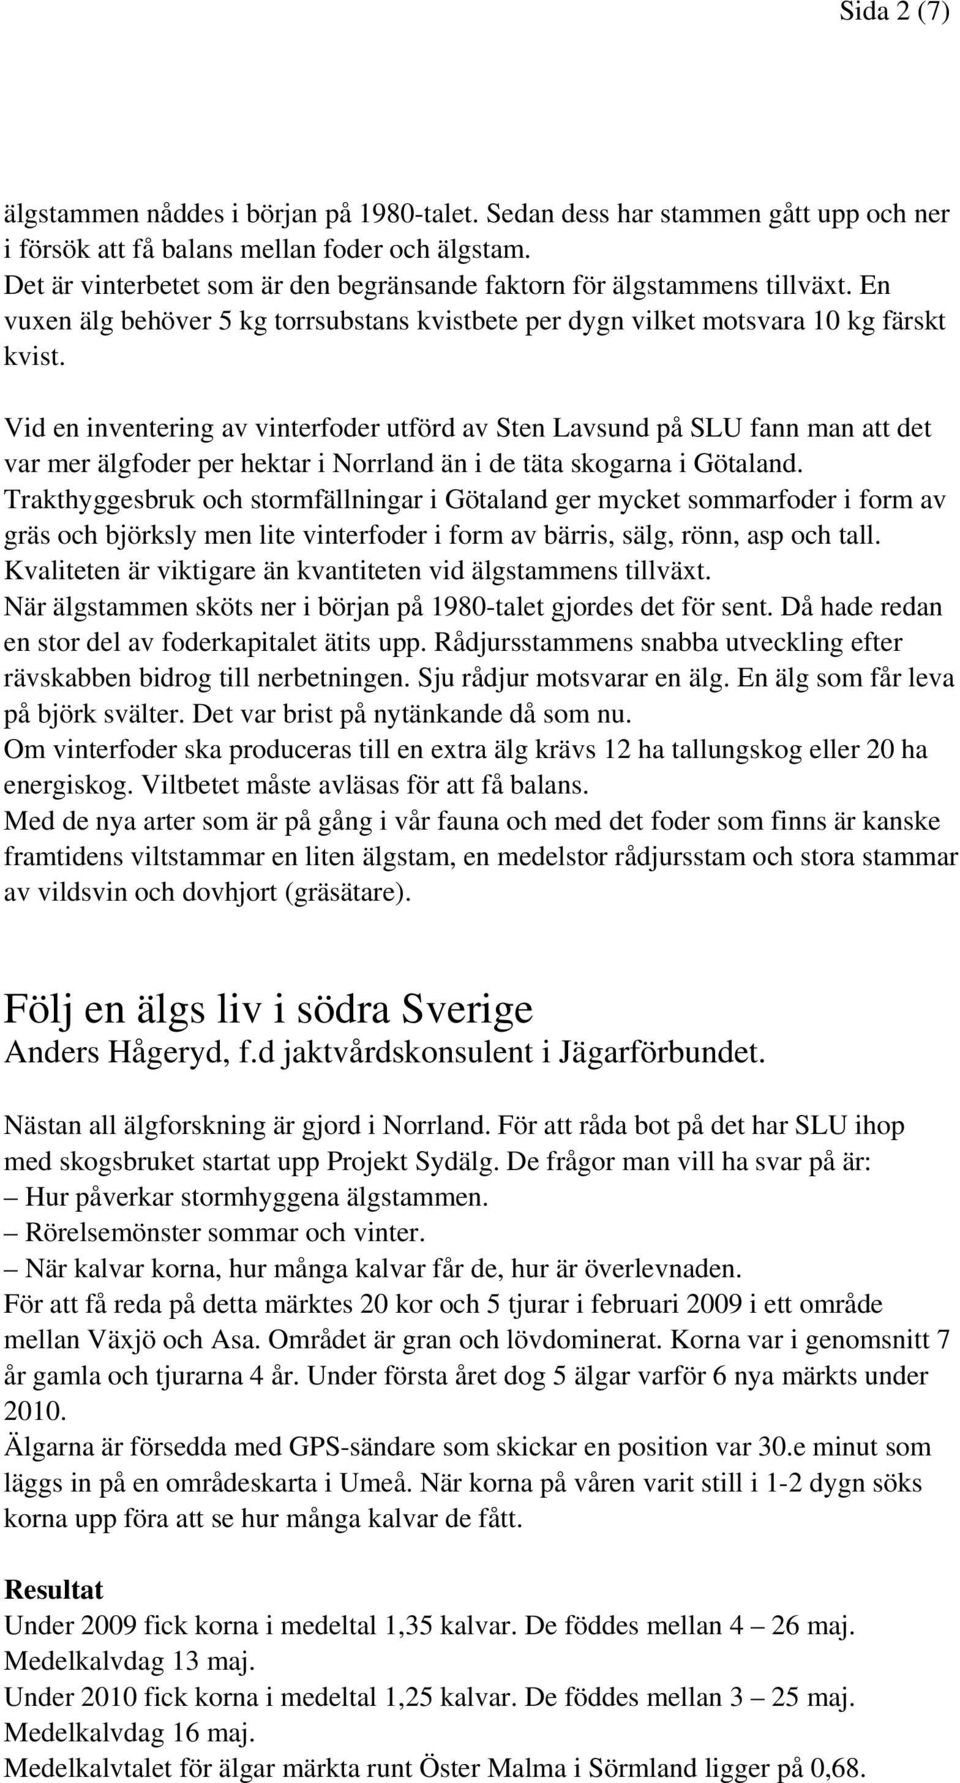 Vid en inventering av vinterfoder utförd av Sten Lavsund på SLU fann man att det var mer älgfoder per hektar i Norrland än i de täta skogarna i Götaland.